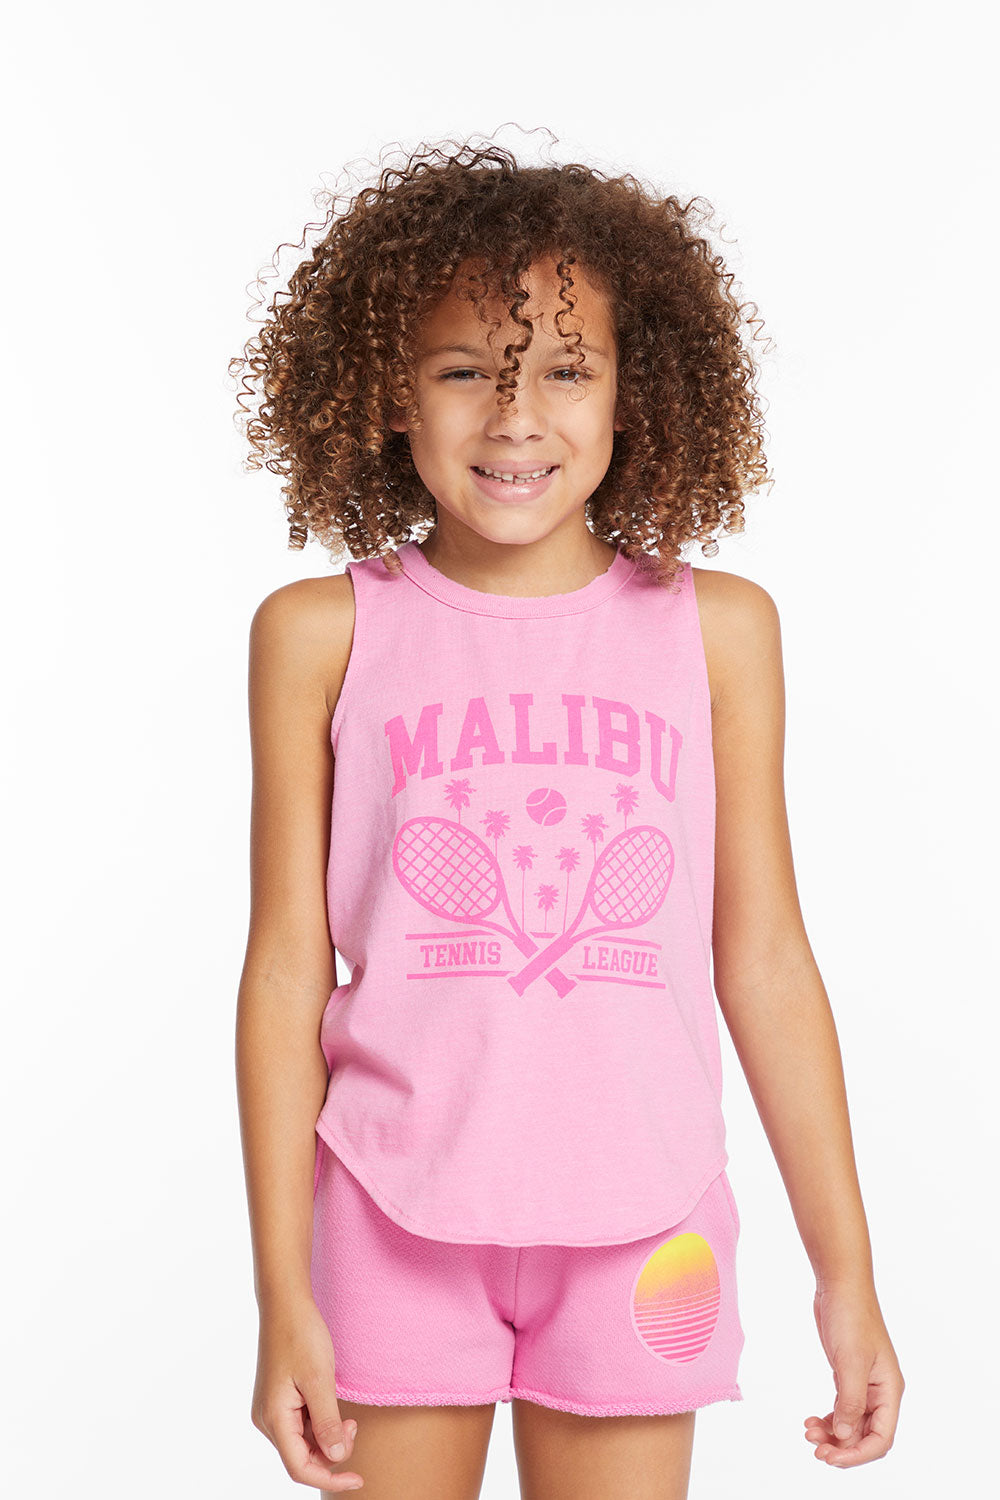 Malibu Girls Vintage Jersey Shirttail Muscle GIRLS chaserbrand